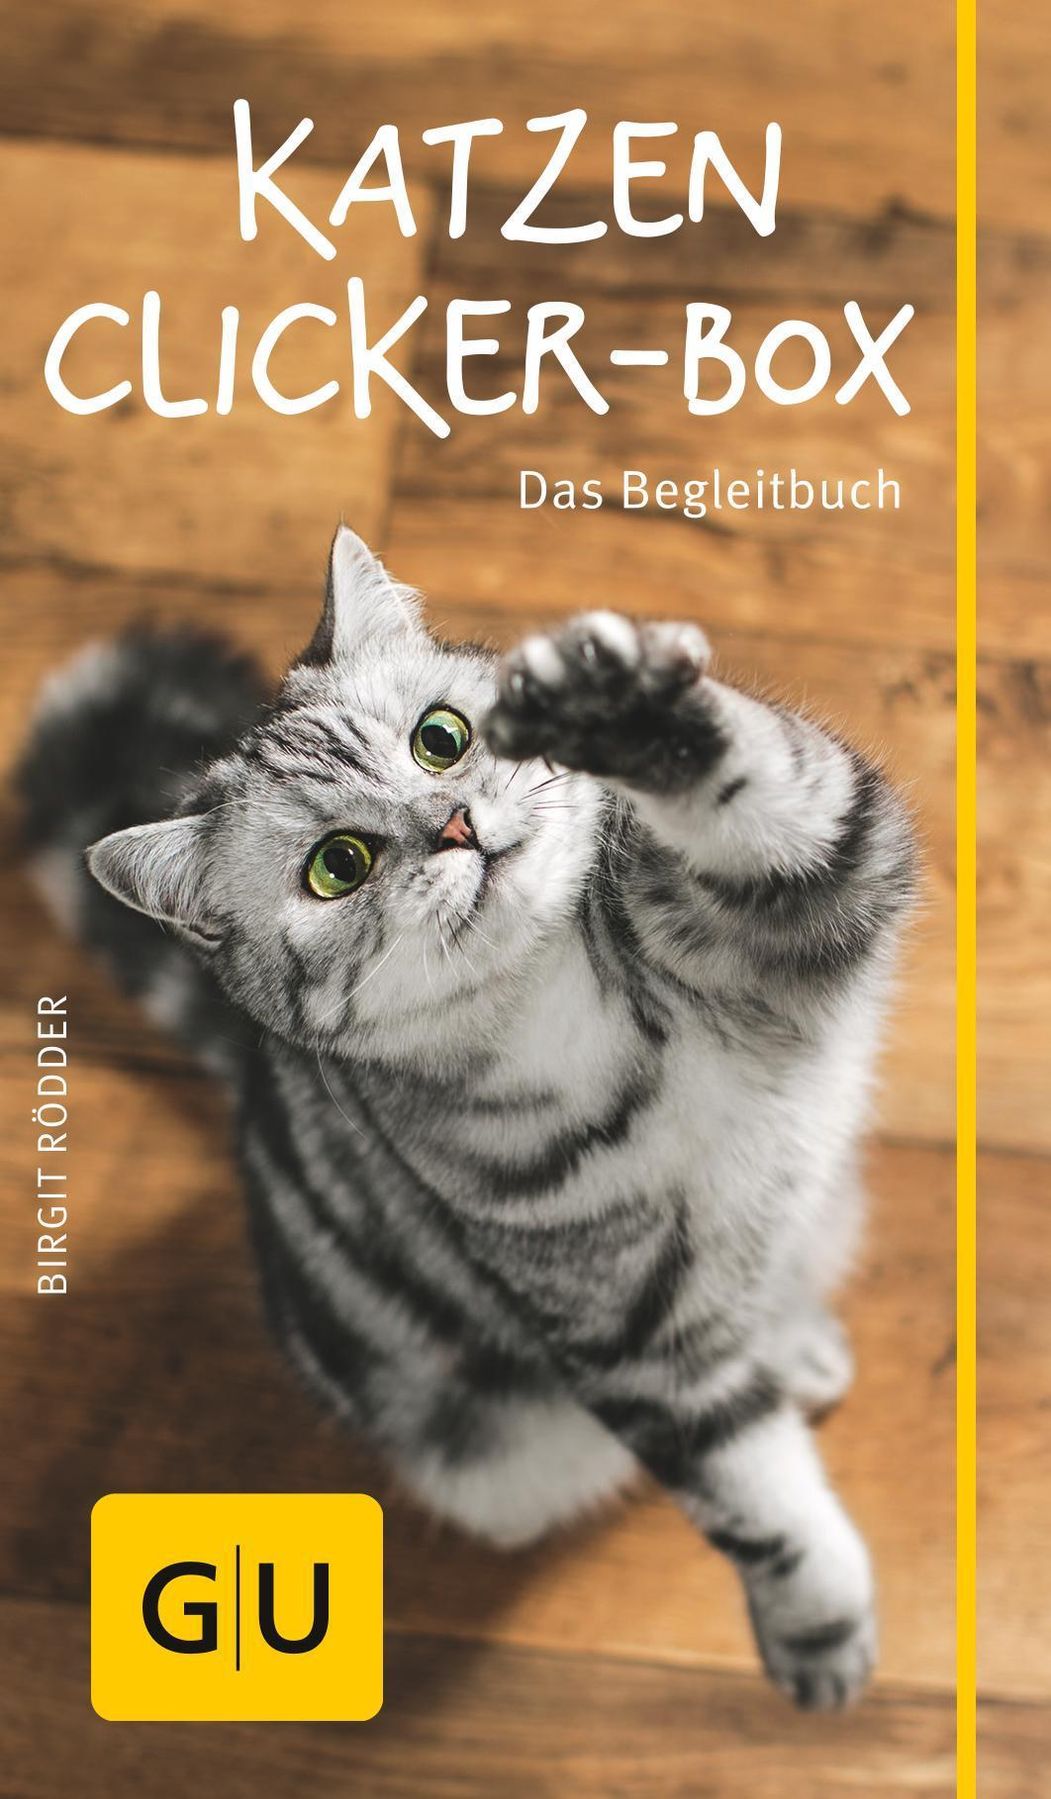 Katzen-Clicker-Box Buch von Birgit Rödder versandkostenfrei - Weltbild.at